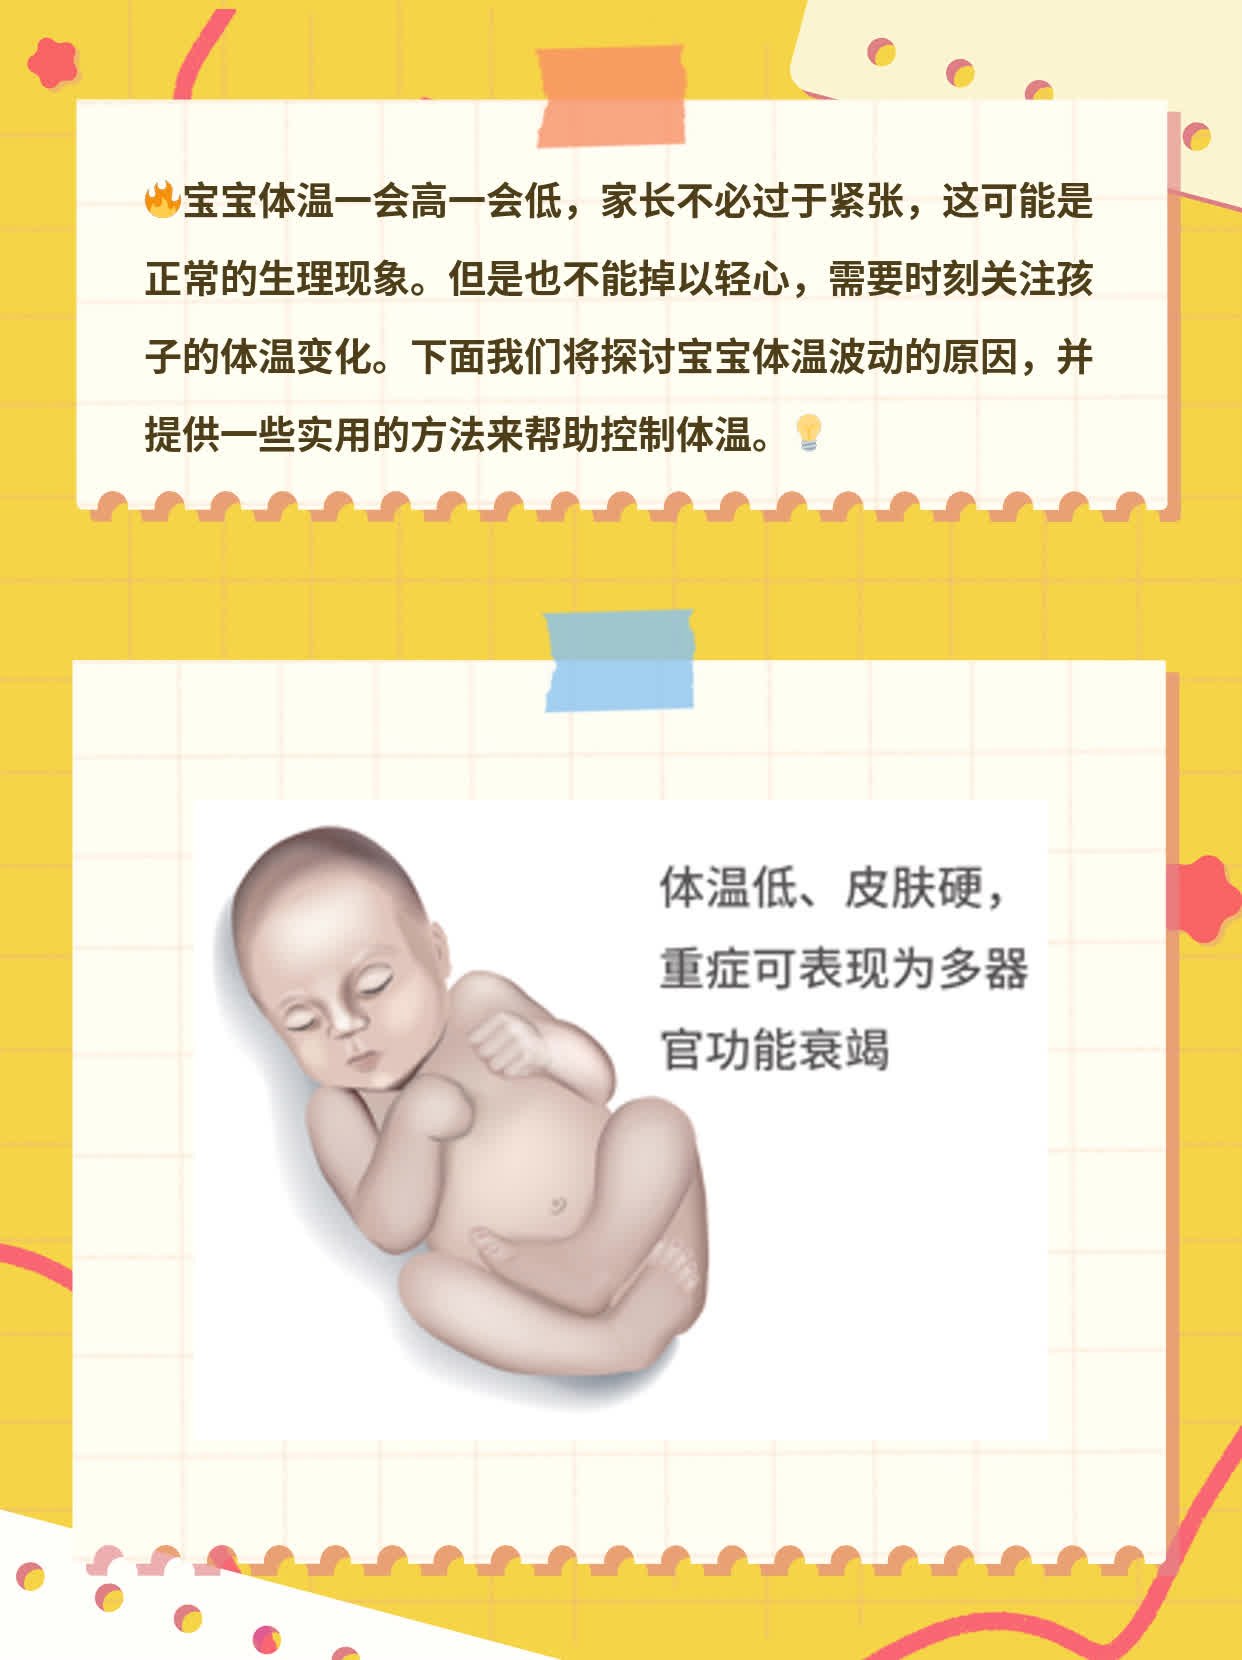 「宝宝体温波动」：孩子体温起伏不定的原因探析